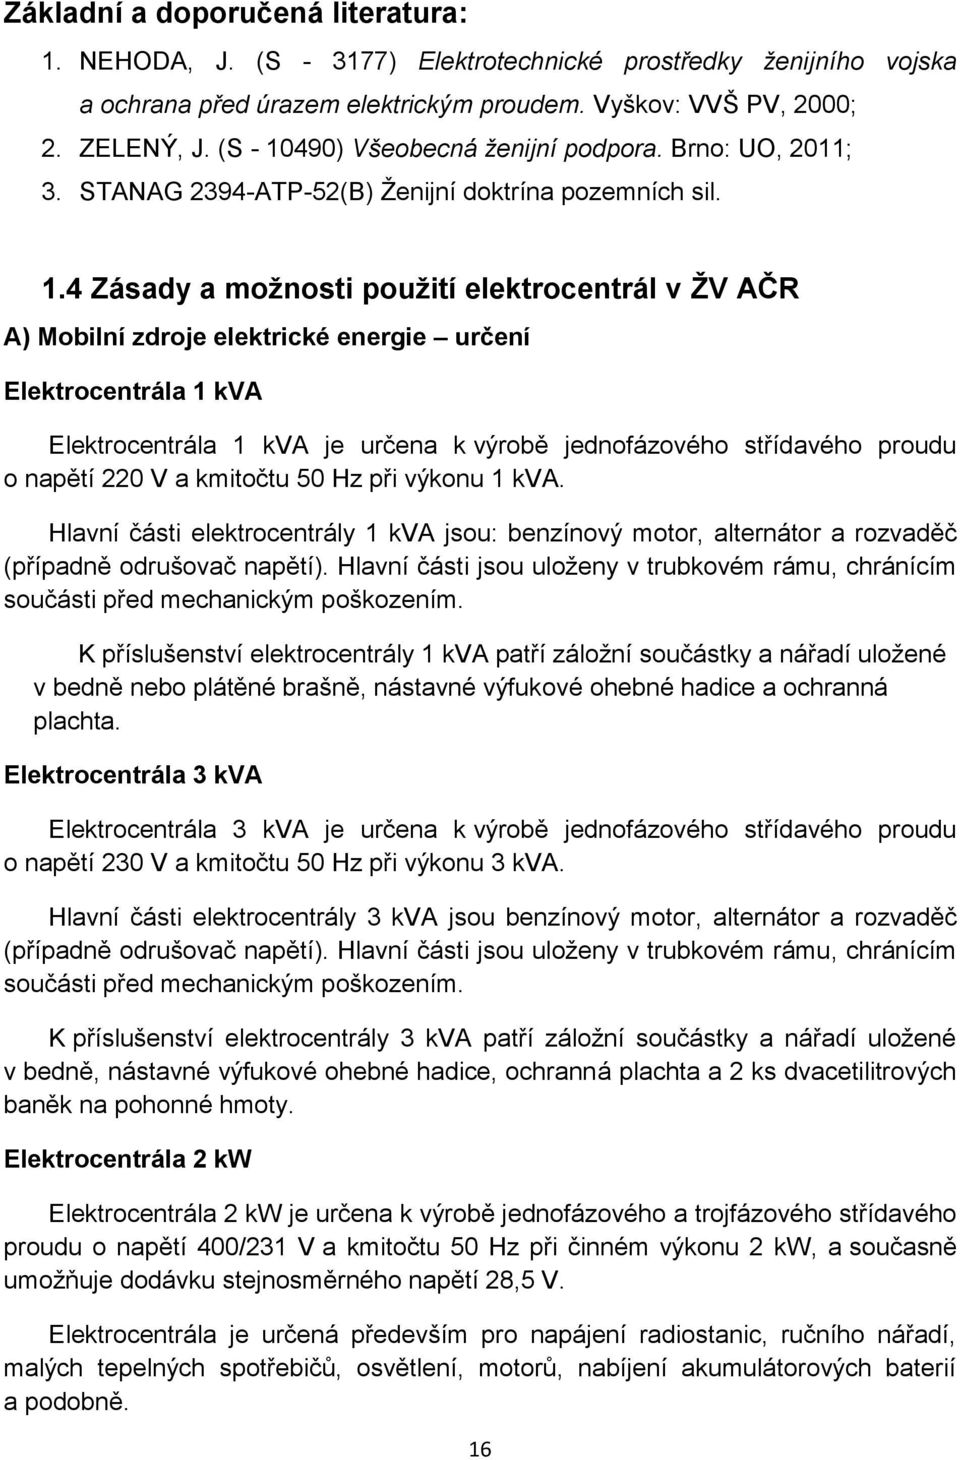 490) Všeobecná ženijní podpora. Brno: UO, 2011; 3. STANAG 2394-ATP-52(B) Ženijní doktrína pozemních sil. 1.